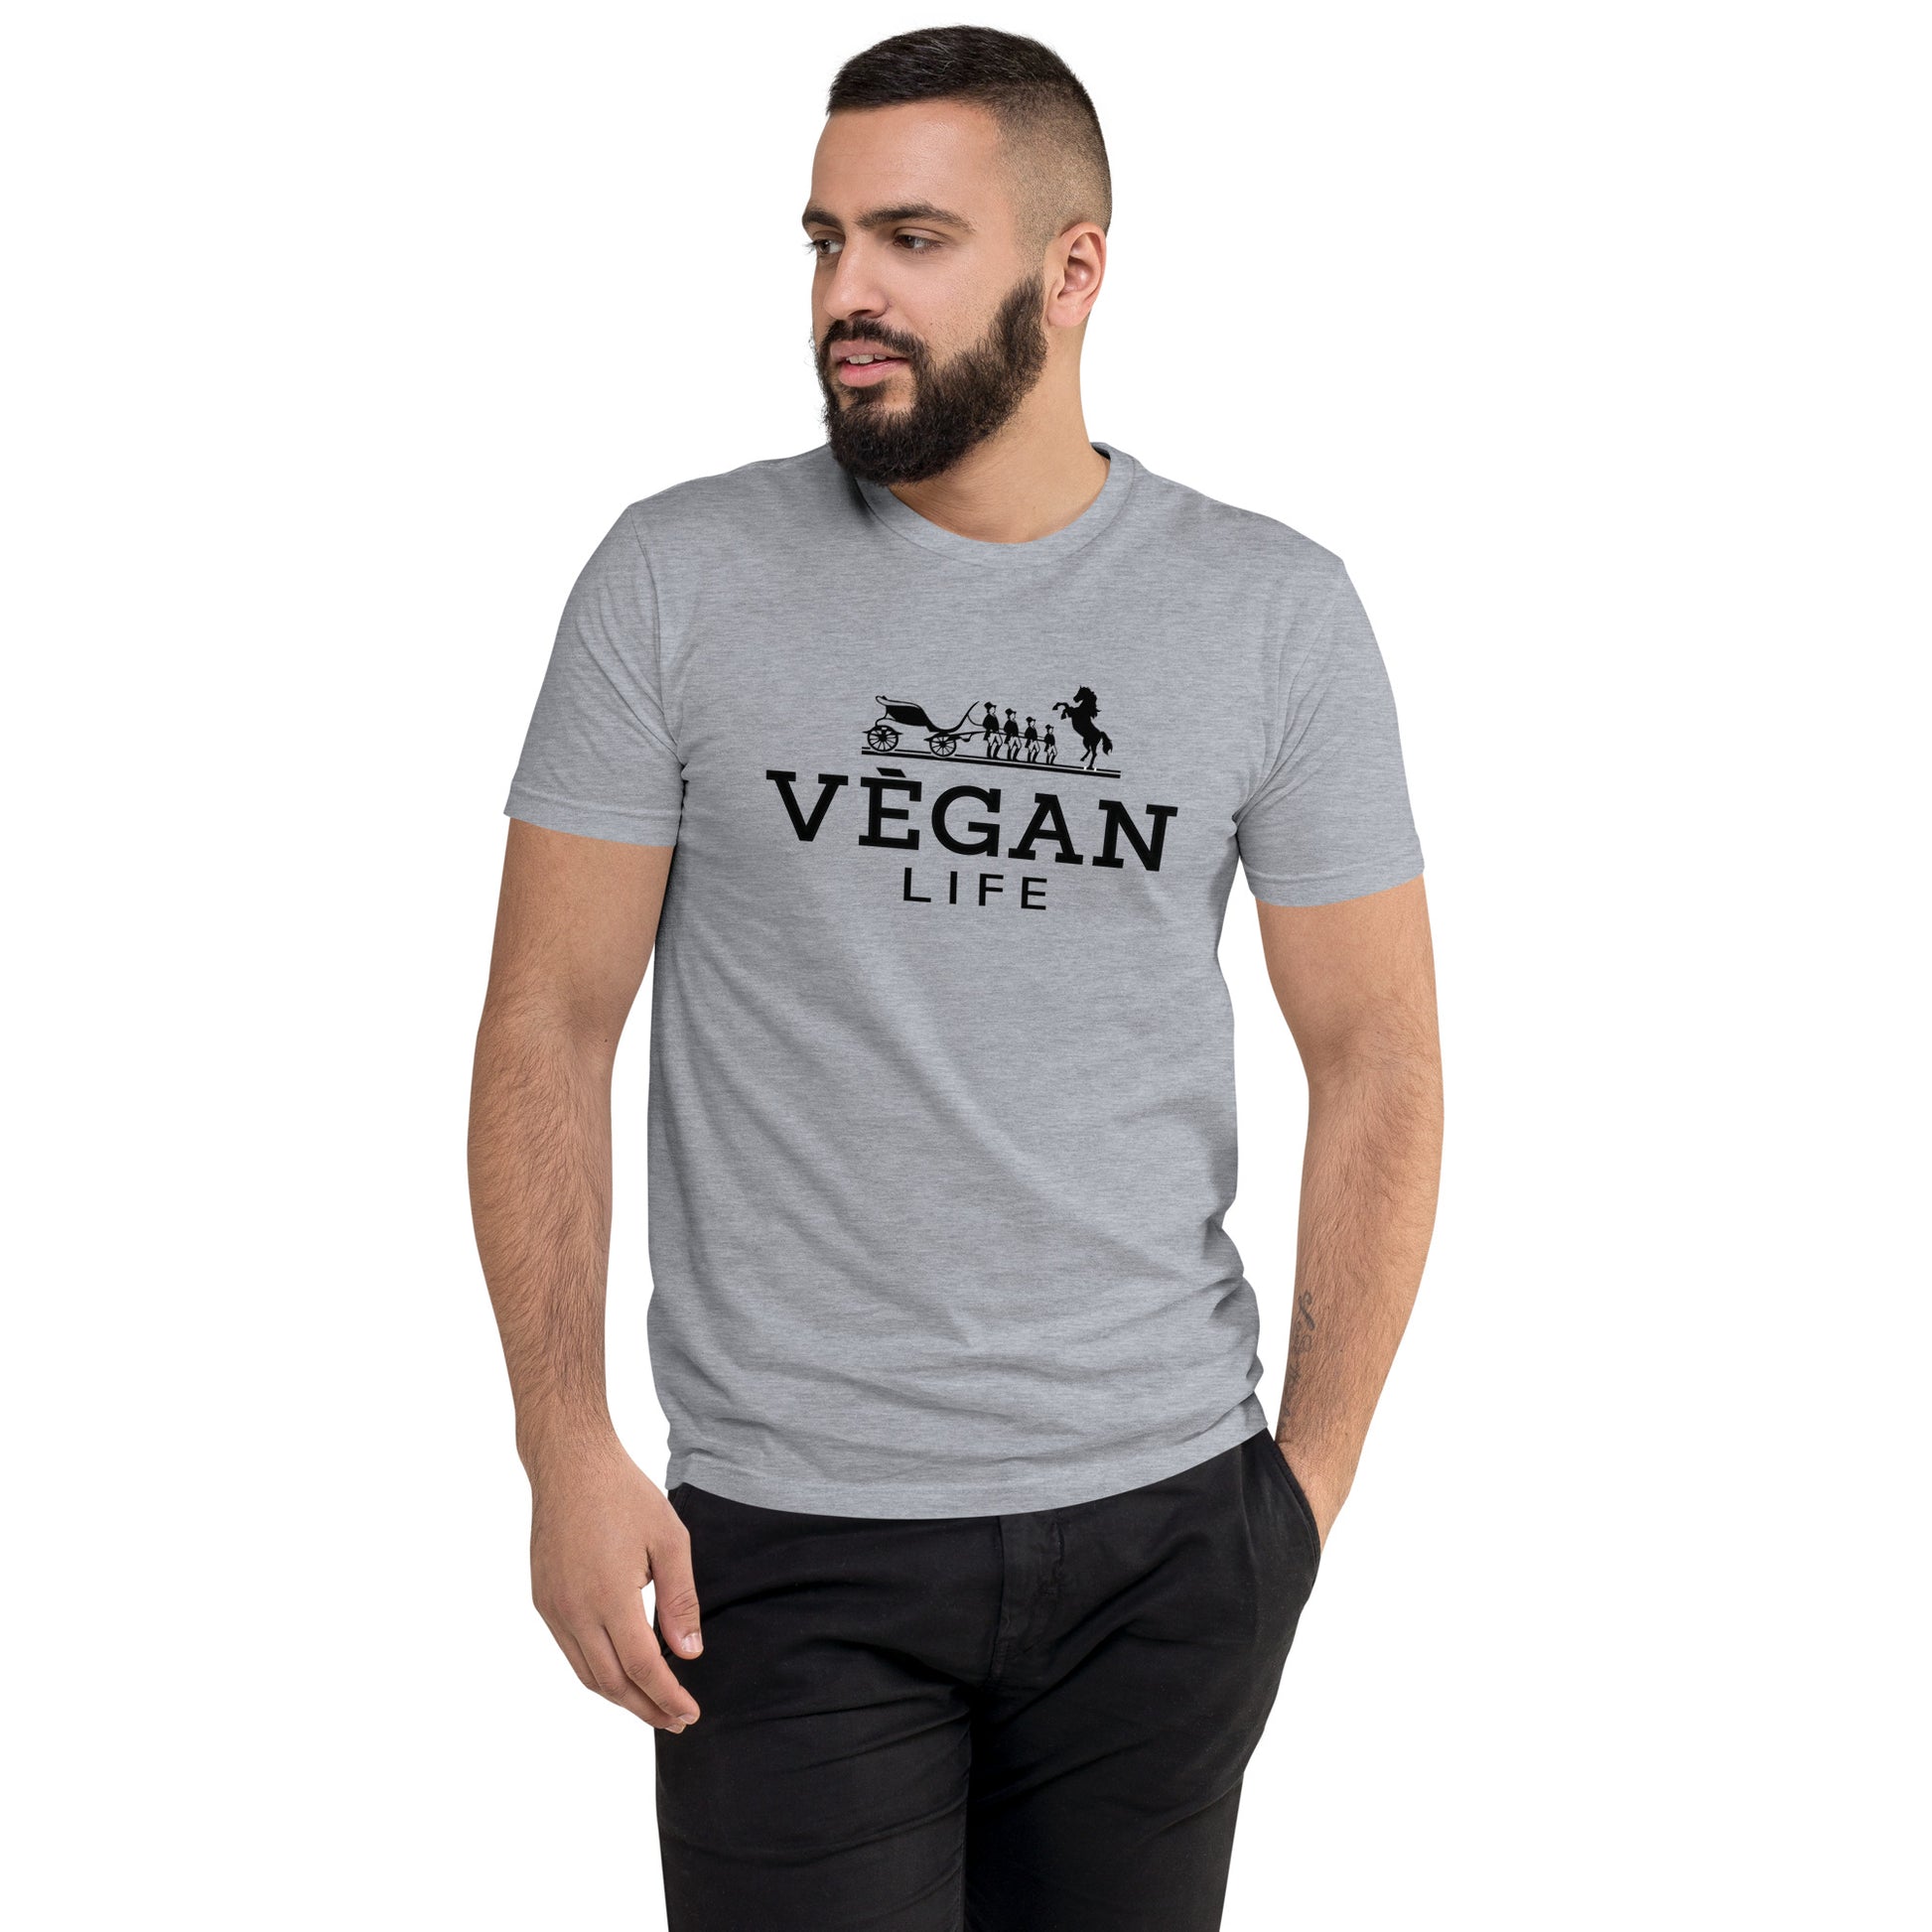 Vegan Life Hermes Inspired Short Sleeve T-shirt - White Buffalo Vegan Apparel